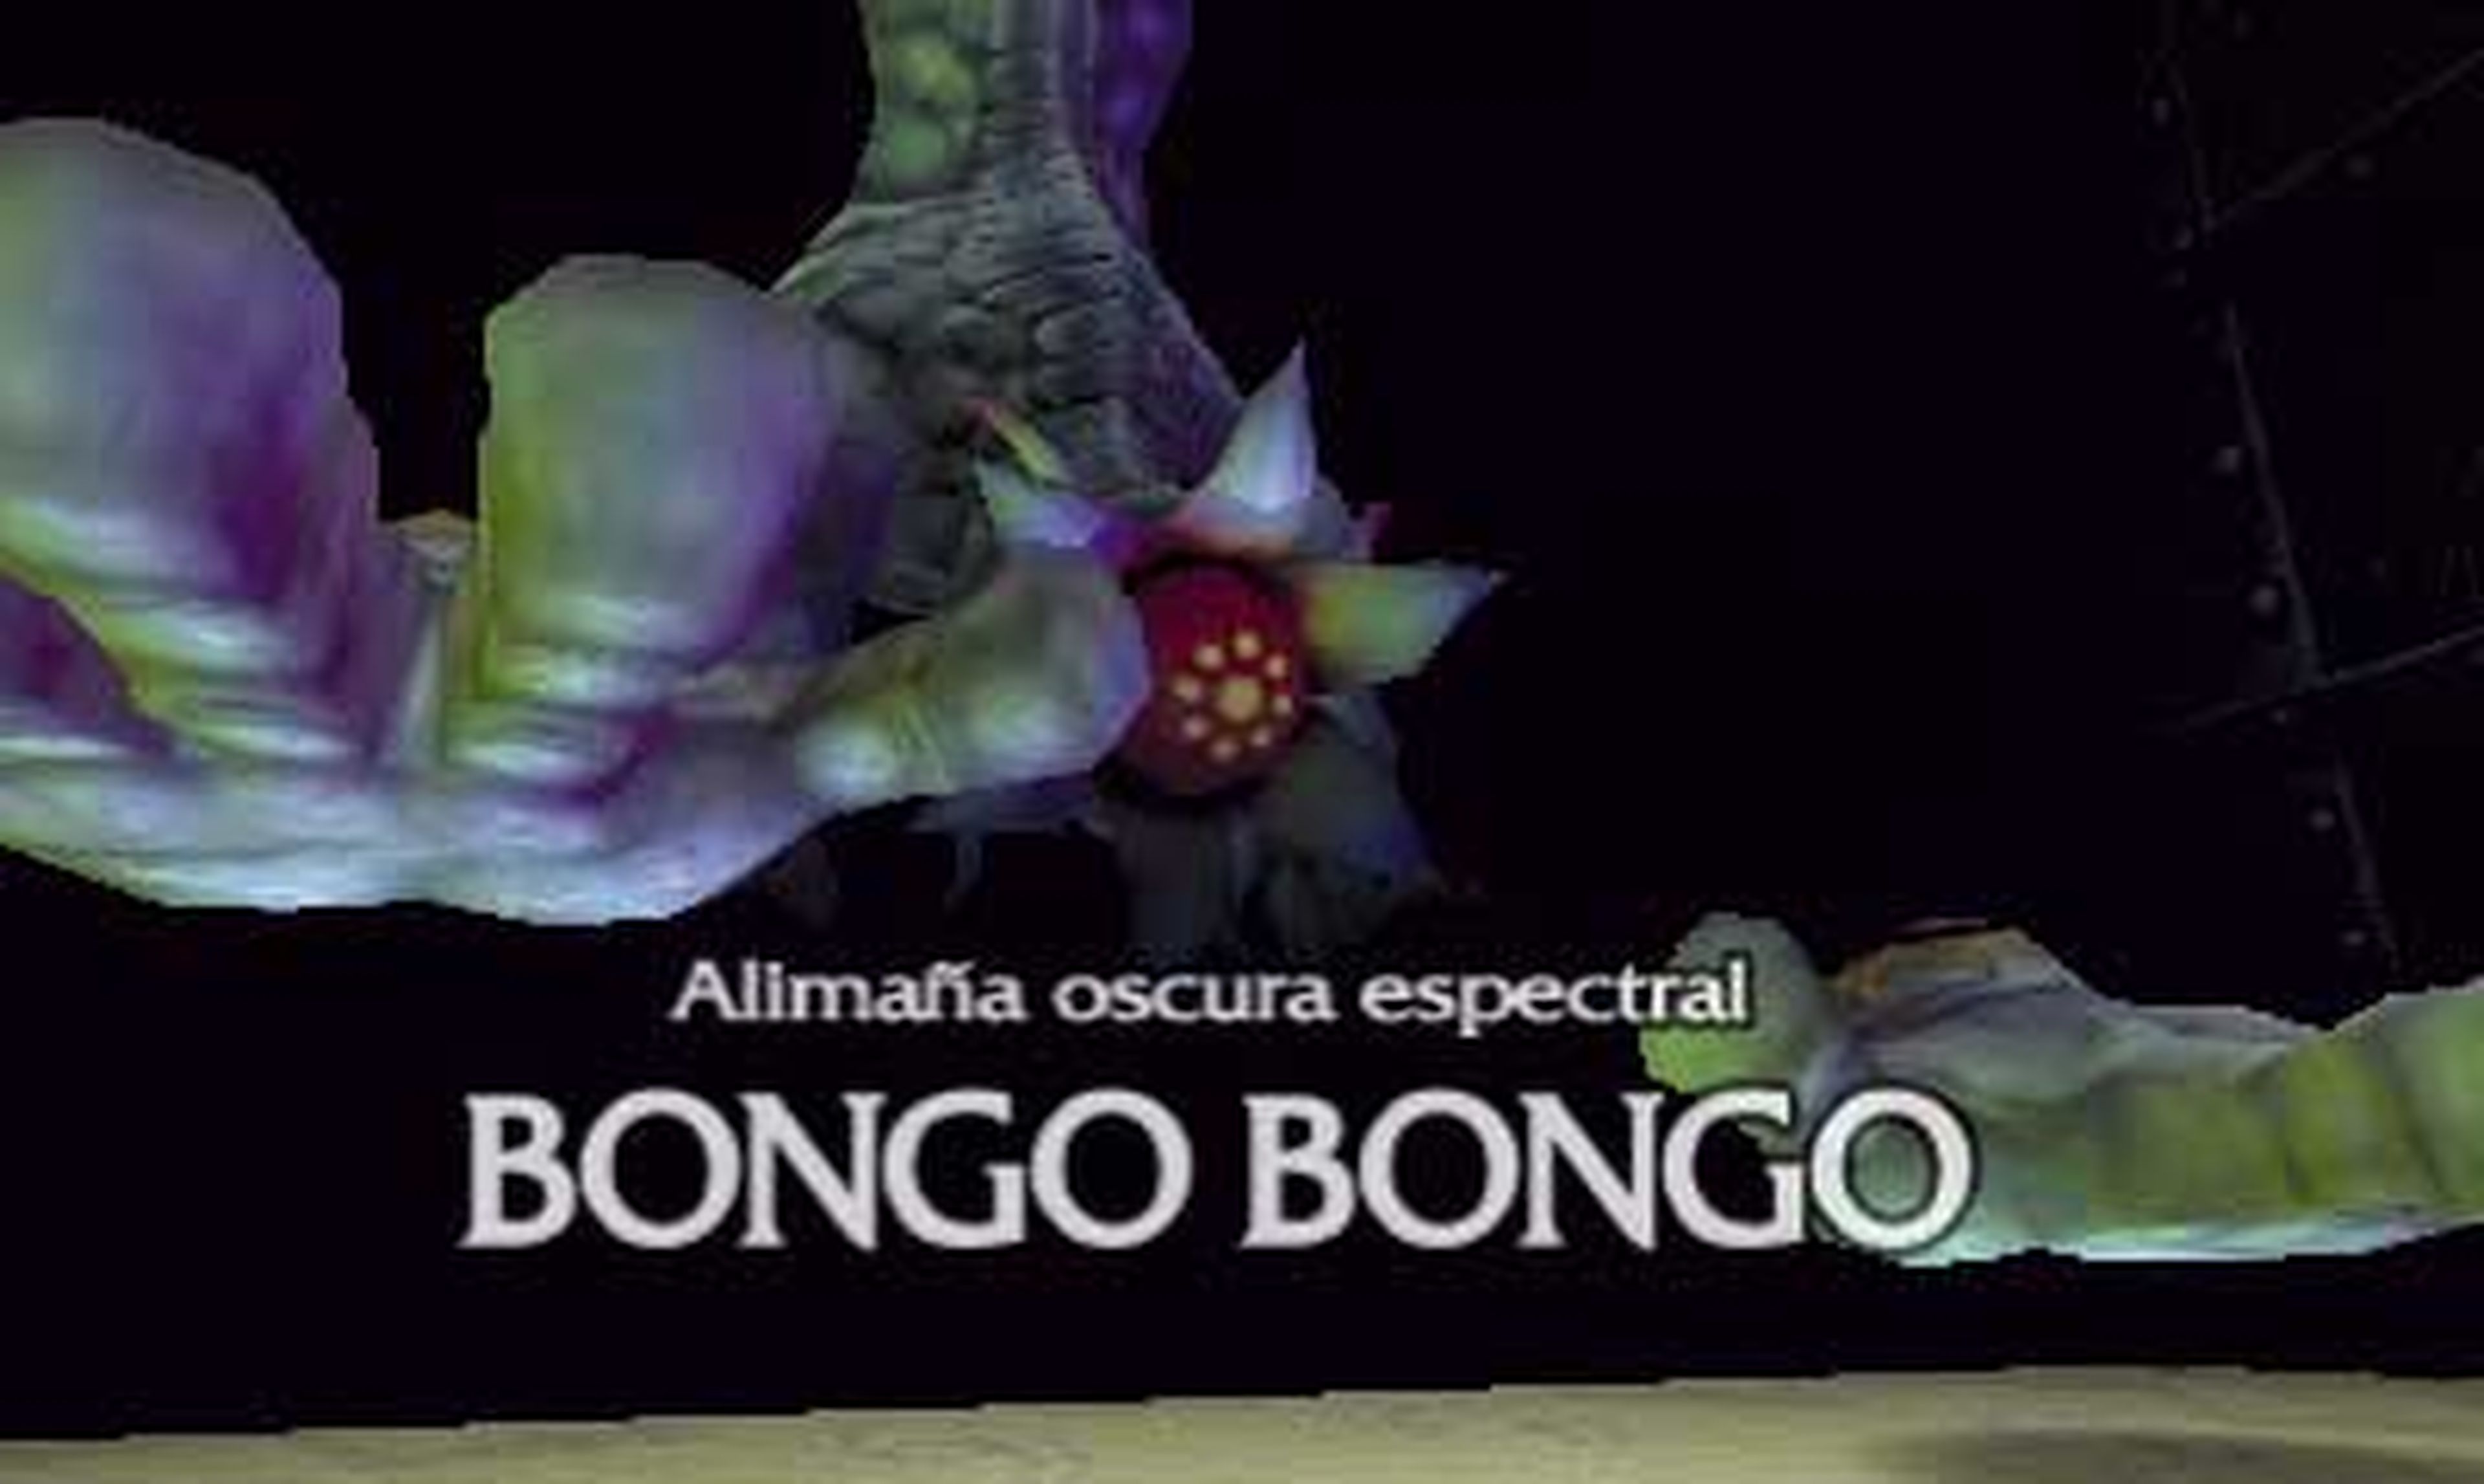 34.2.1. Bongo Bongo